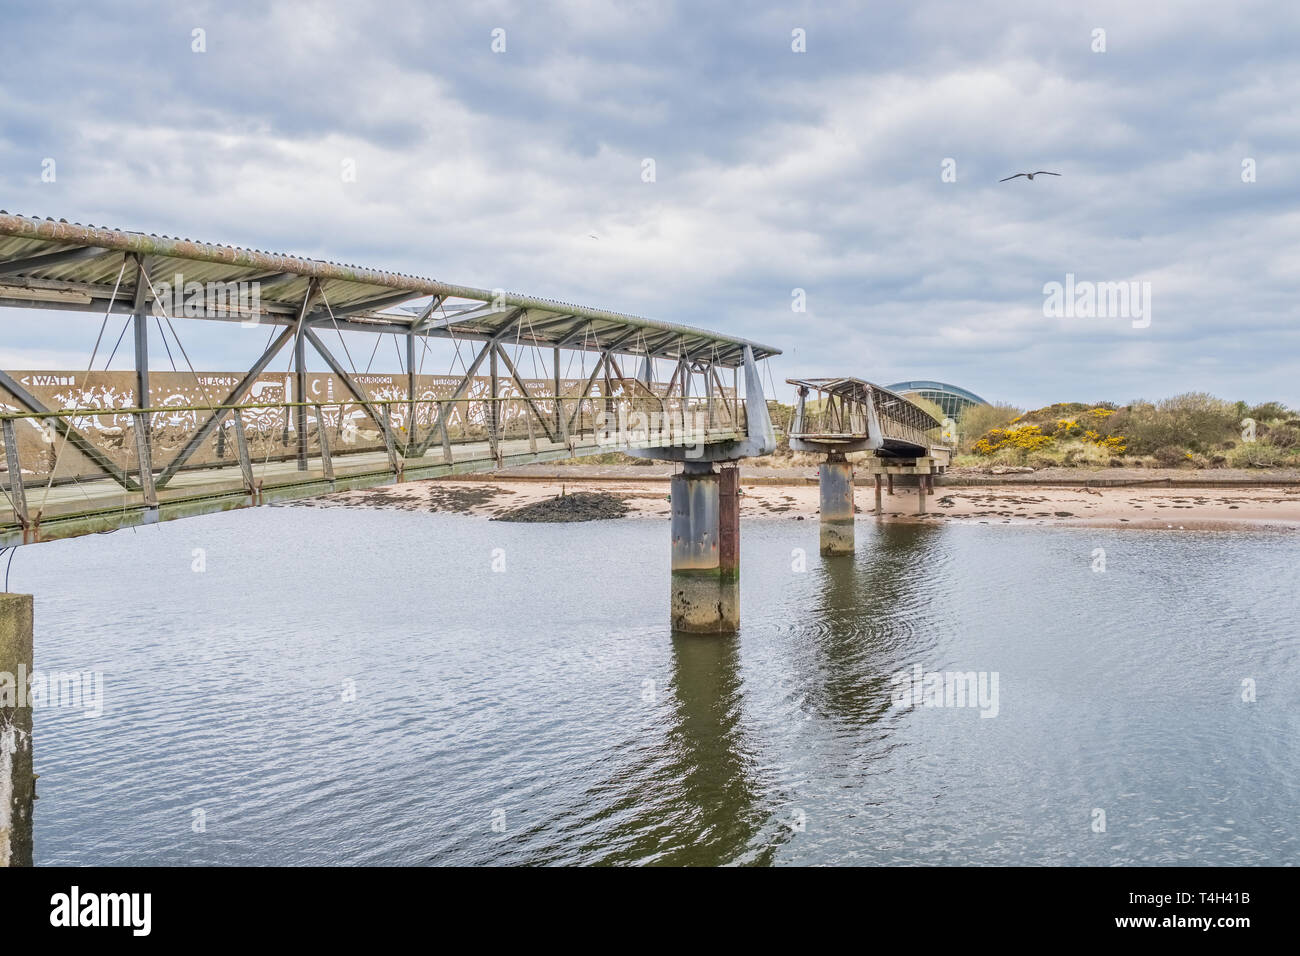 Irvine, Schottland, Großbritannien - 14 April 2019: Irvine Hafen North Ayrshire in Schottland und in den alten Science Museum Brücke mit ihrer Arbeit bald zu sanieren. Stockfoto